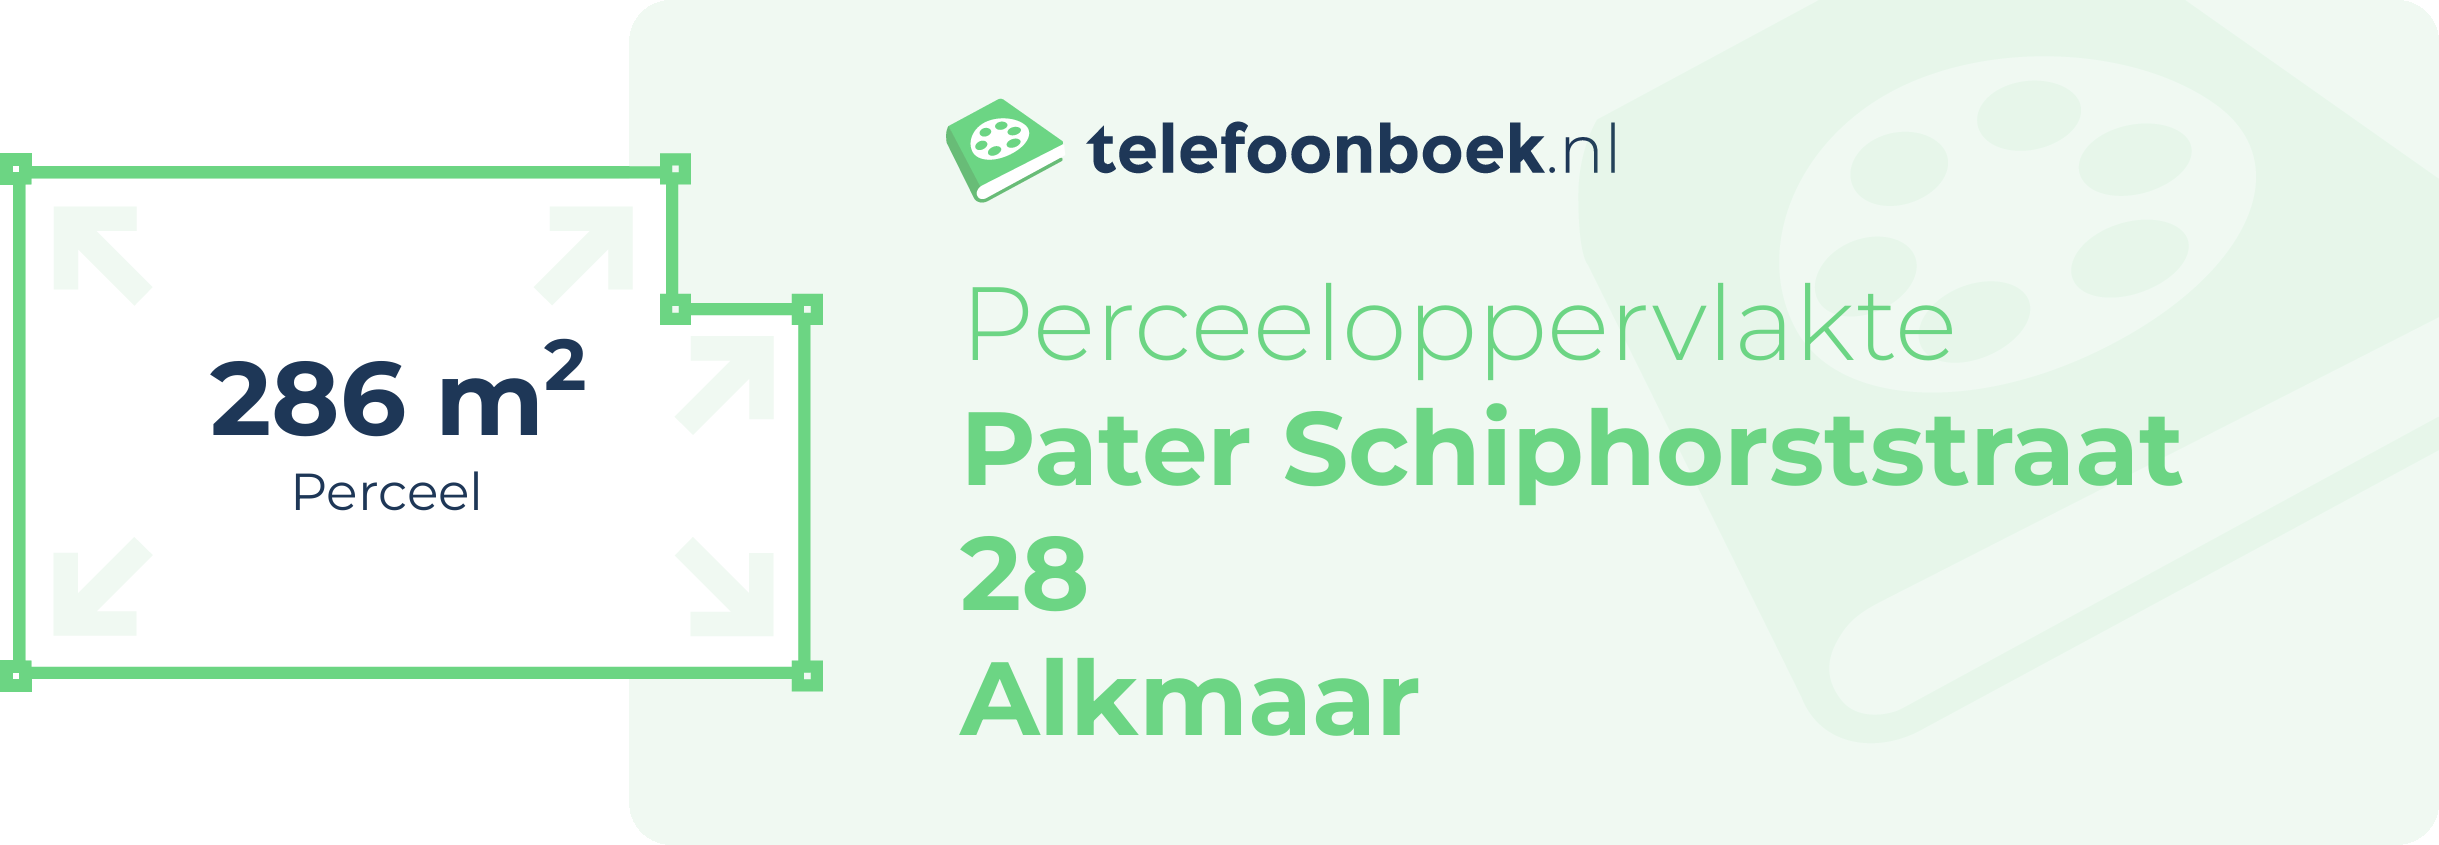 Perceeloppervlakte Pater Schiphorststraat 28 Alkmaar